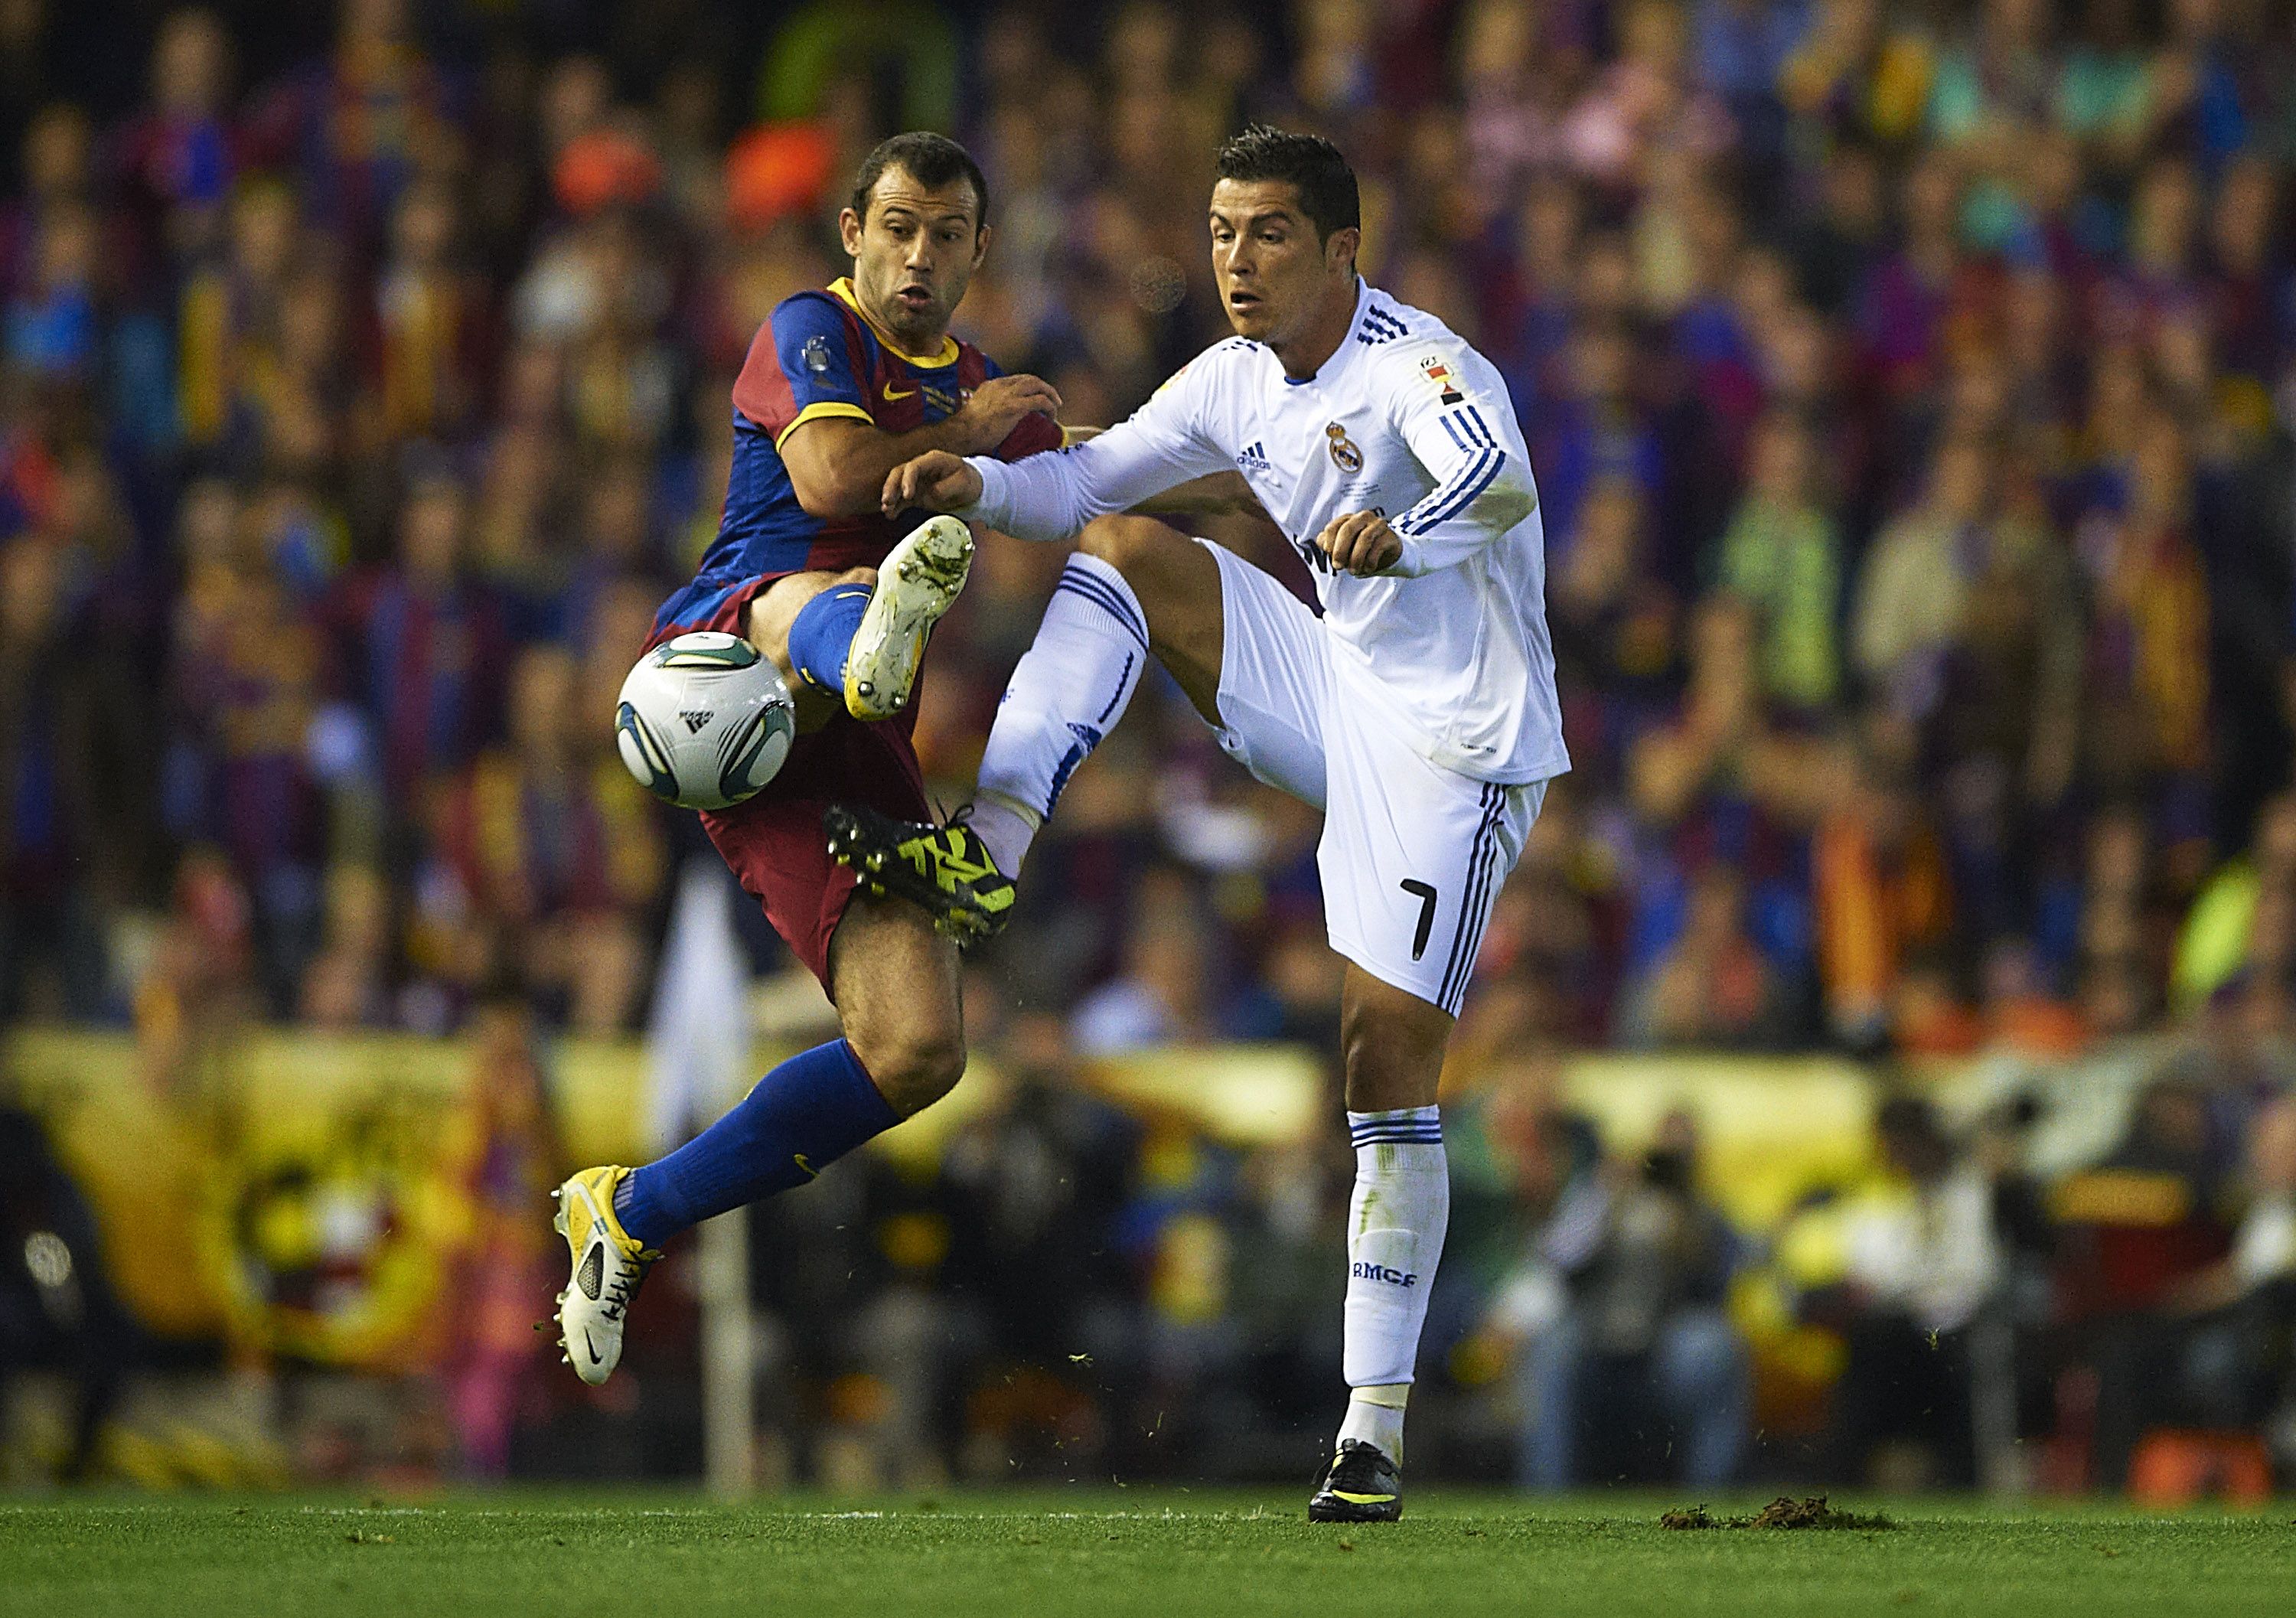 Cristiano Ronaldo in action in the 2011 Copa del Rey final